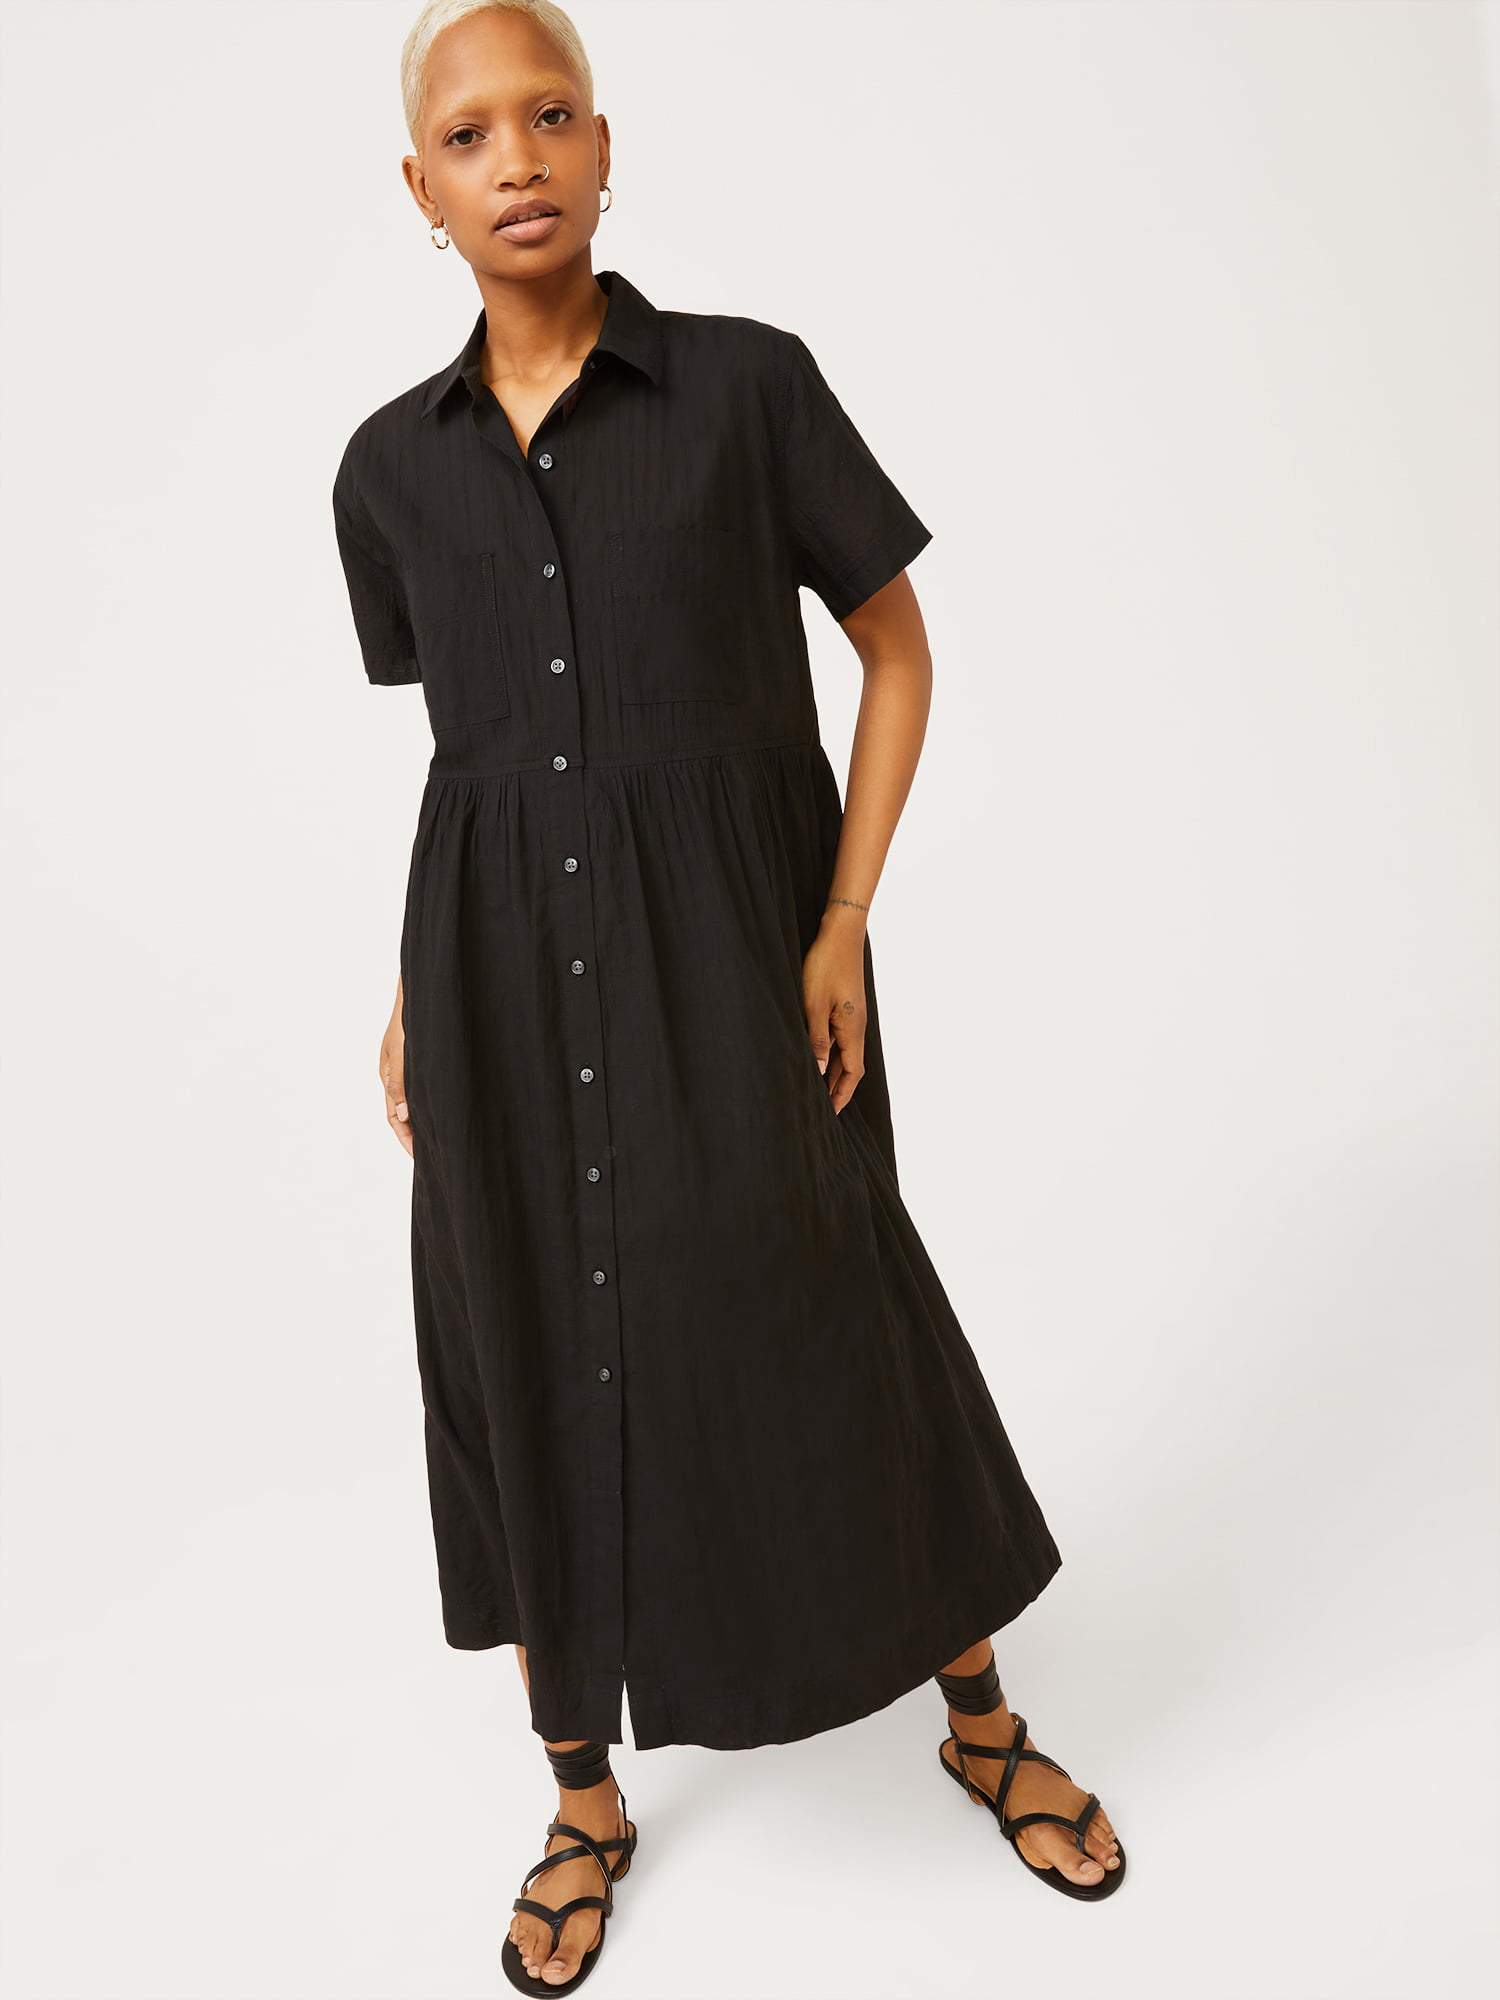 Free Assembly Women's Short Sleeve Maxi Shirtdress - Walmart.com